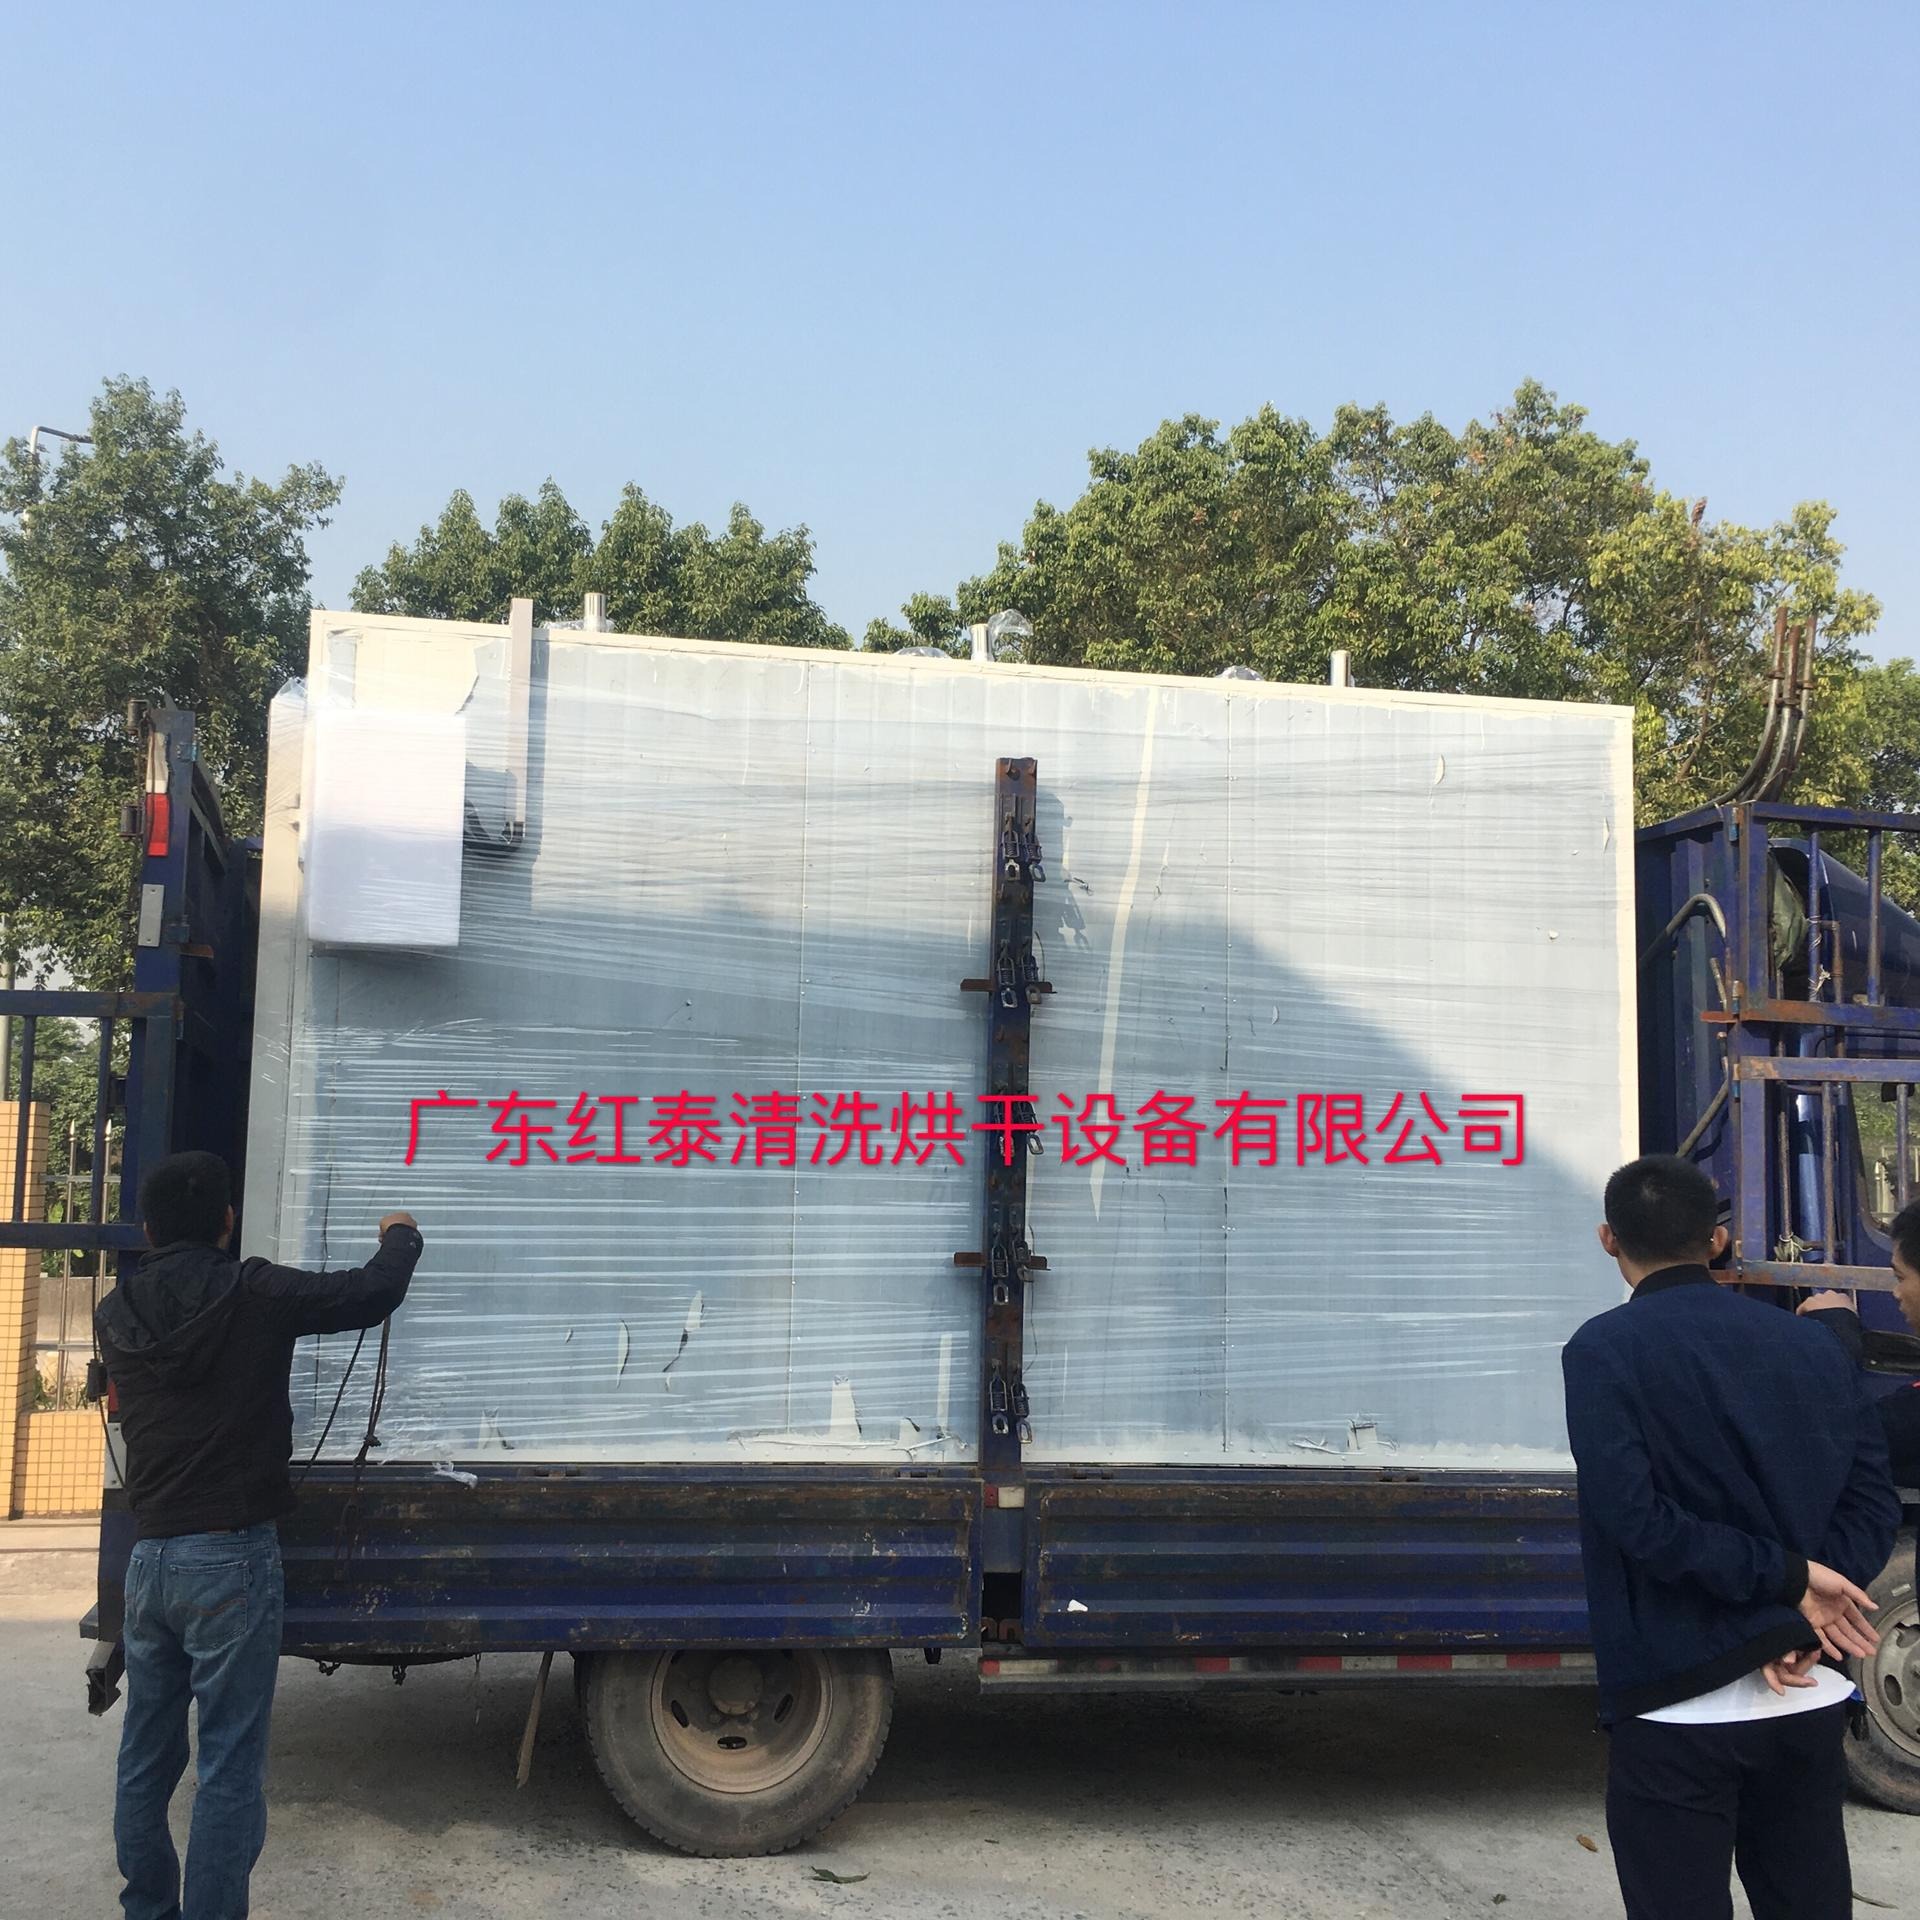 东莞厂家直销不锈钢烘箱 真空干燥箱 热风循环烘箱 防潮柜 红泰20191125图片